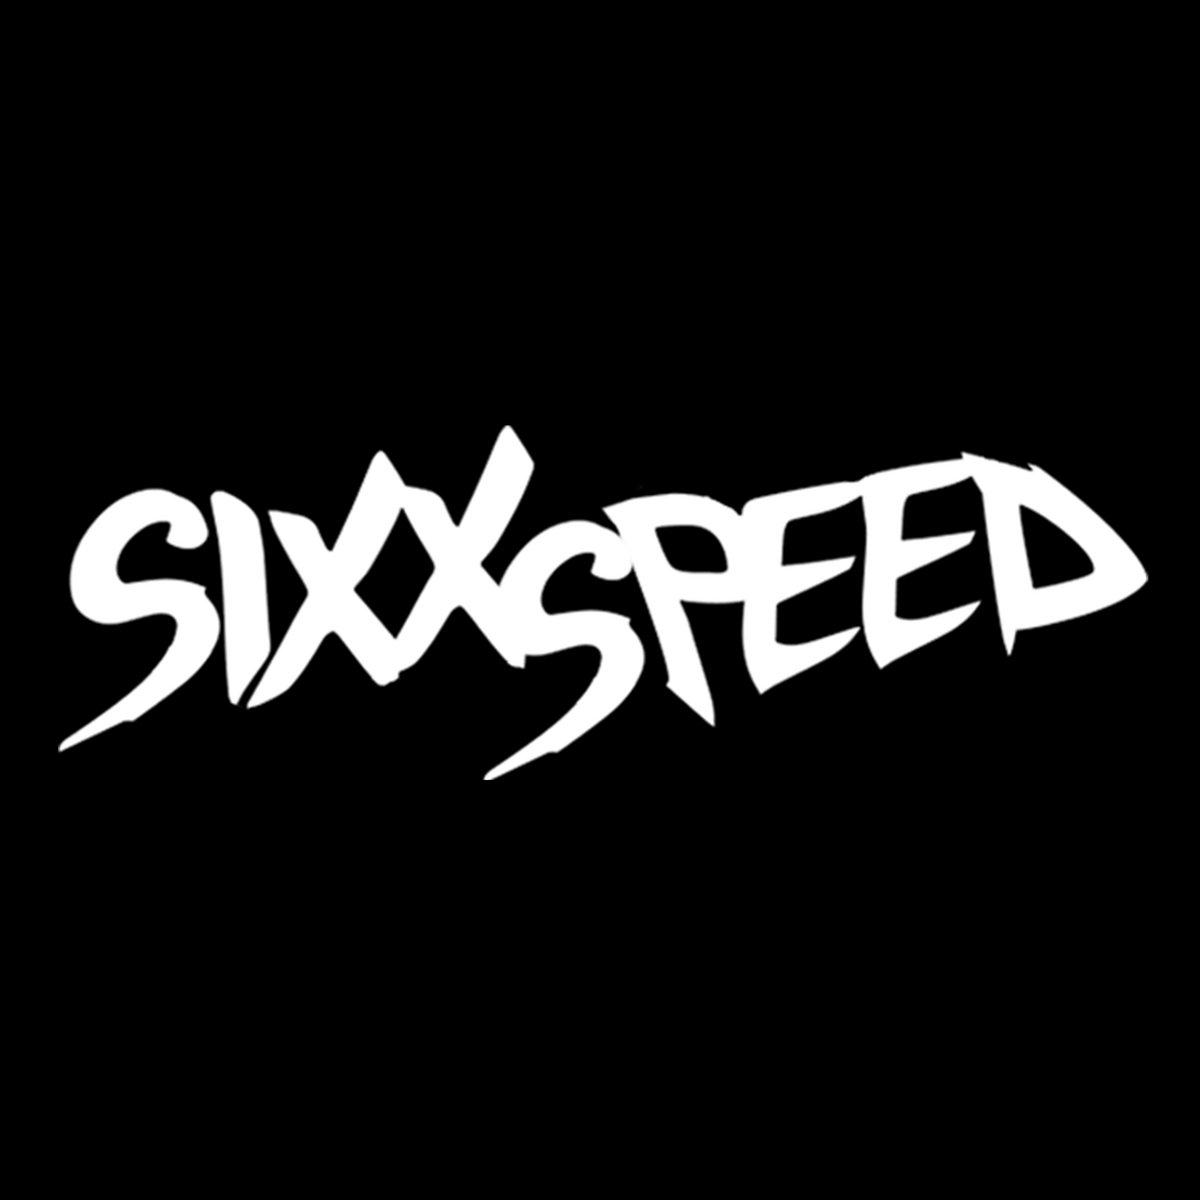 SixxSpeed